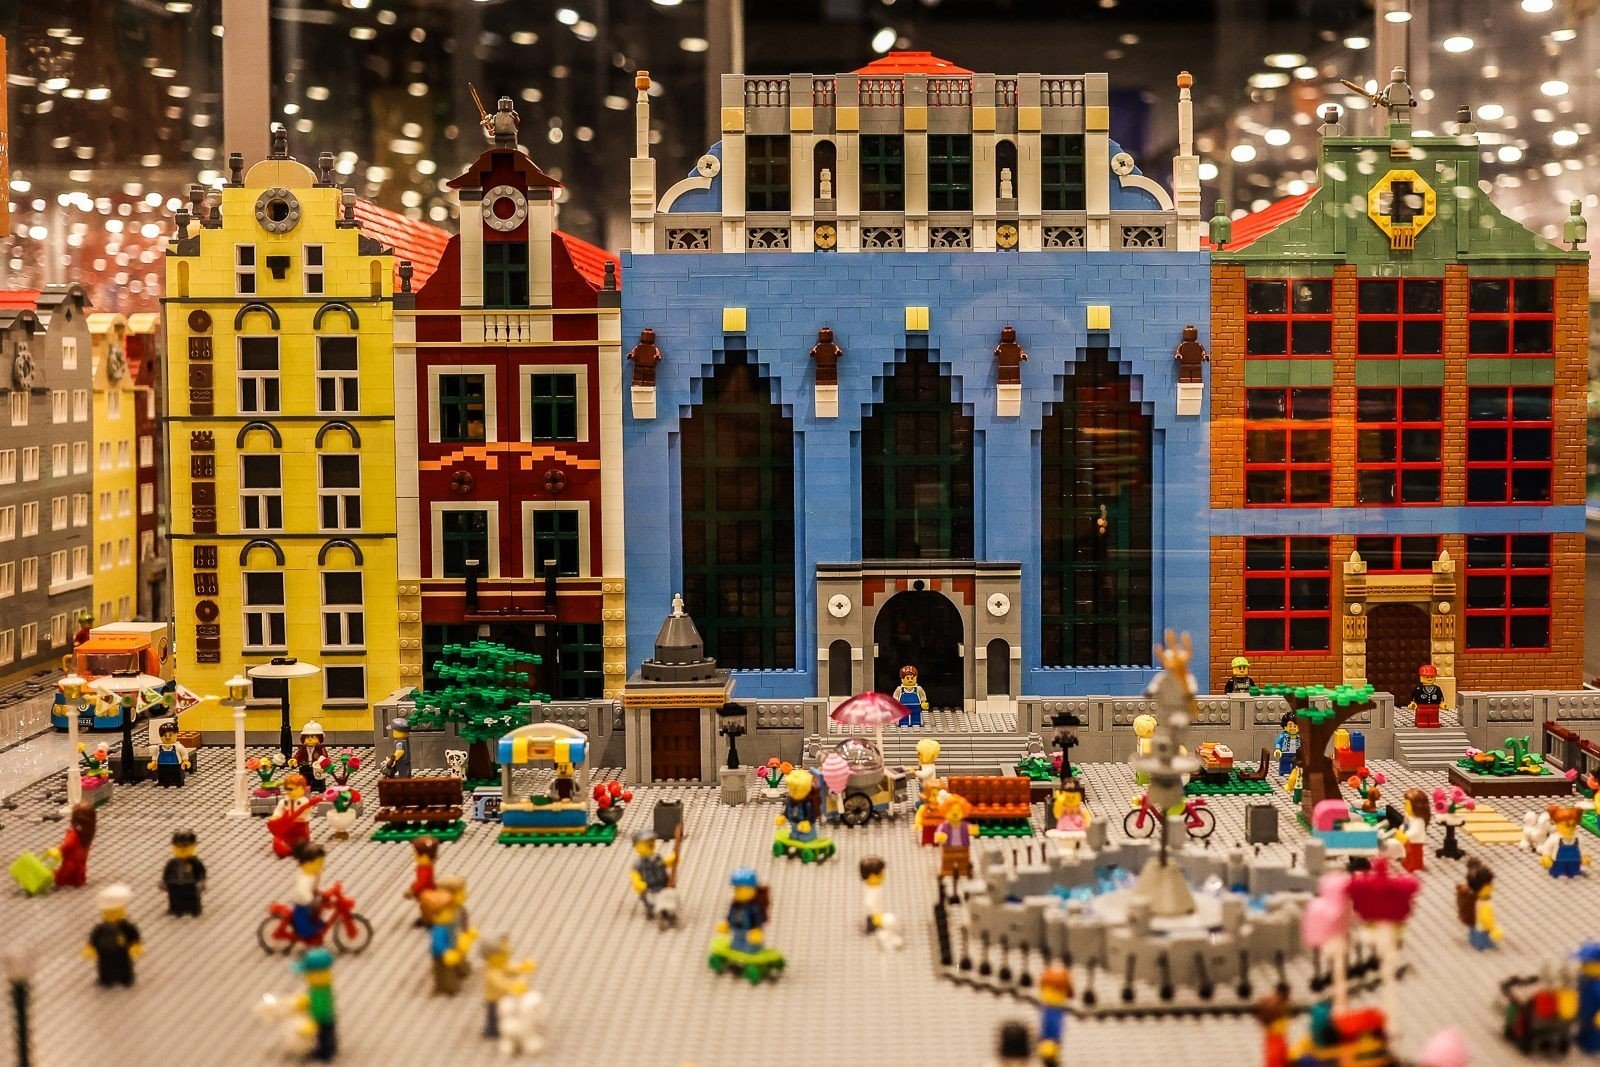 Wystawa Klockow Lego Katowice Tak wygląda największa wystawa klocków Lego w Europie. Jest już